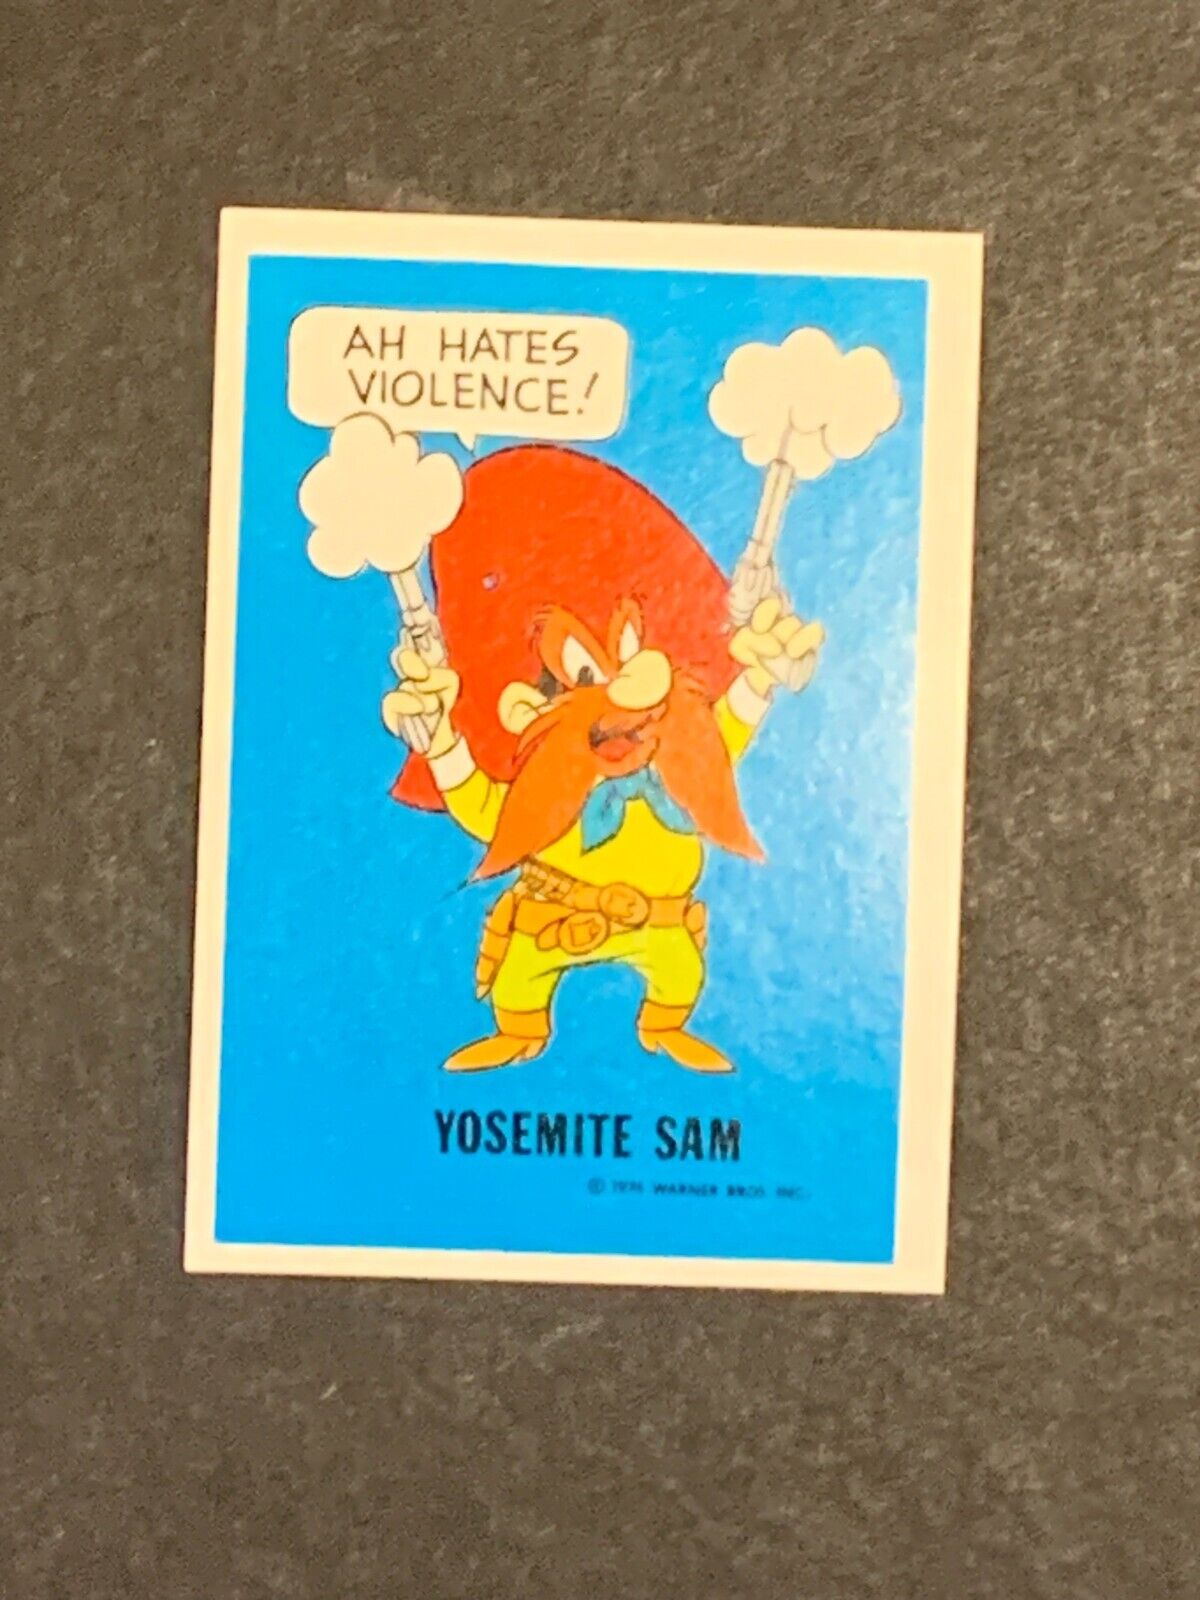 1974 Yosemite Sam Wonder Bread Warner Brothers Comics Card High Grade NM-